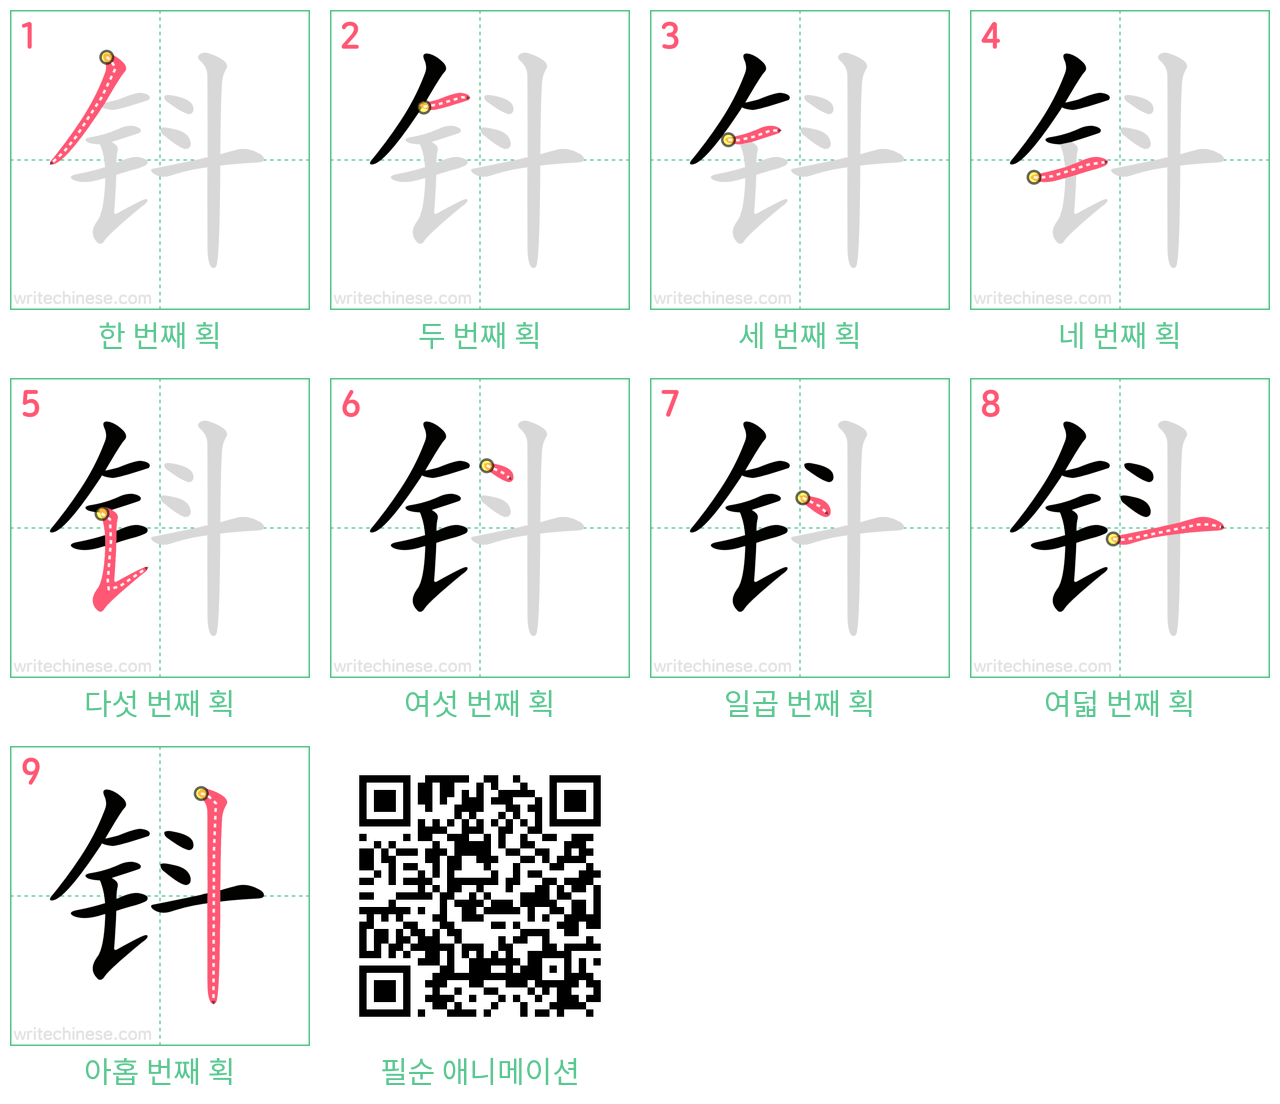 钭 step-by-step stroke order diagrams